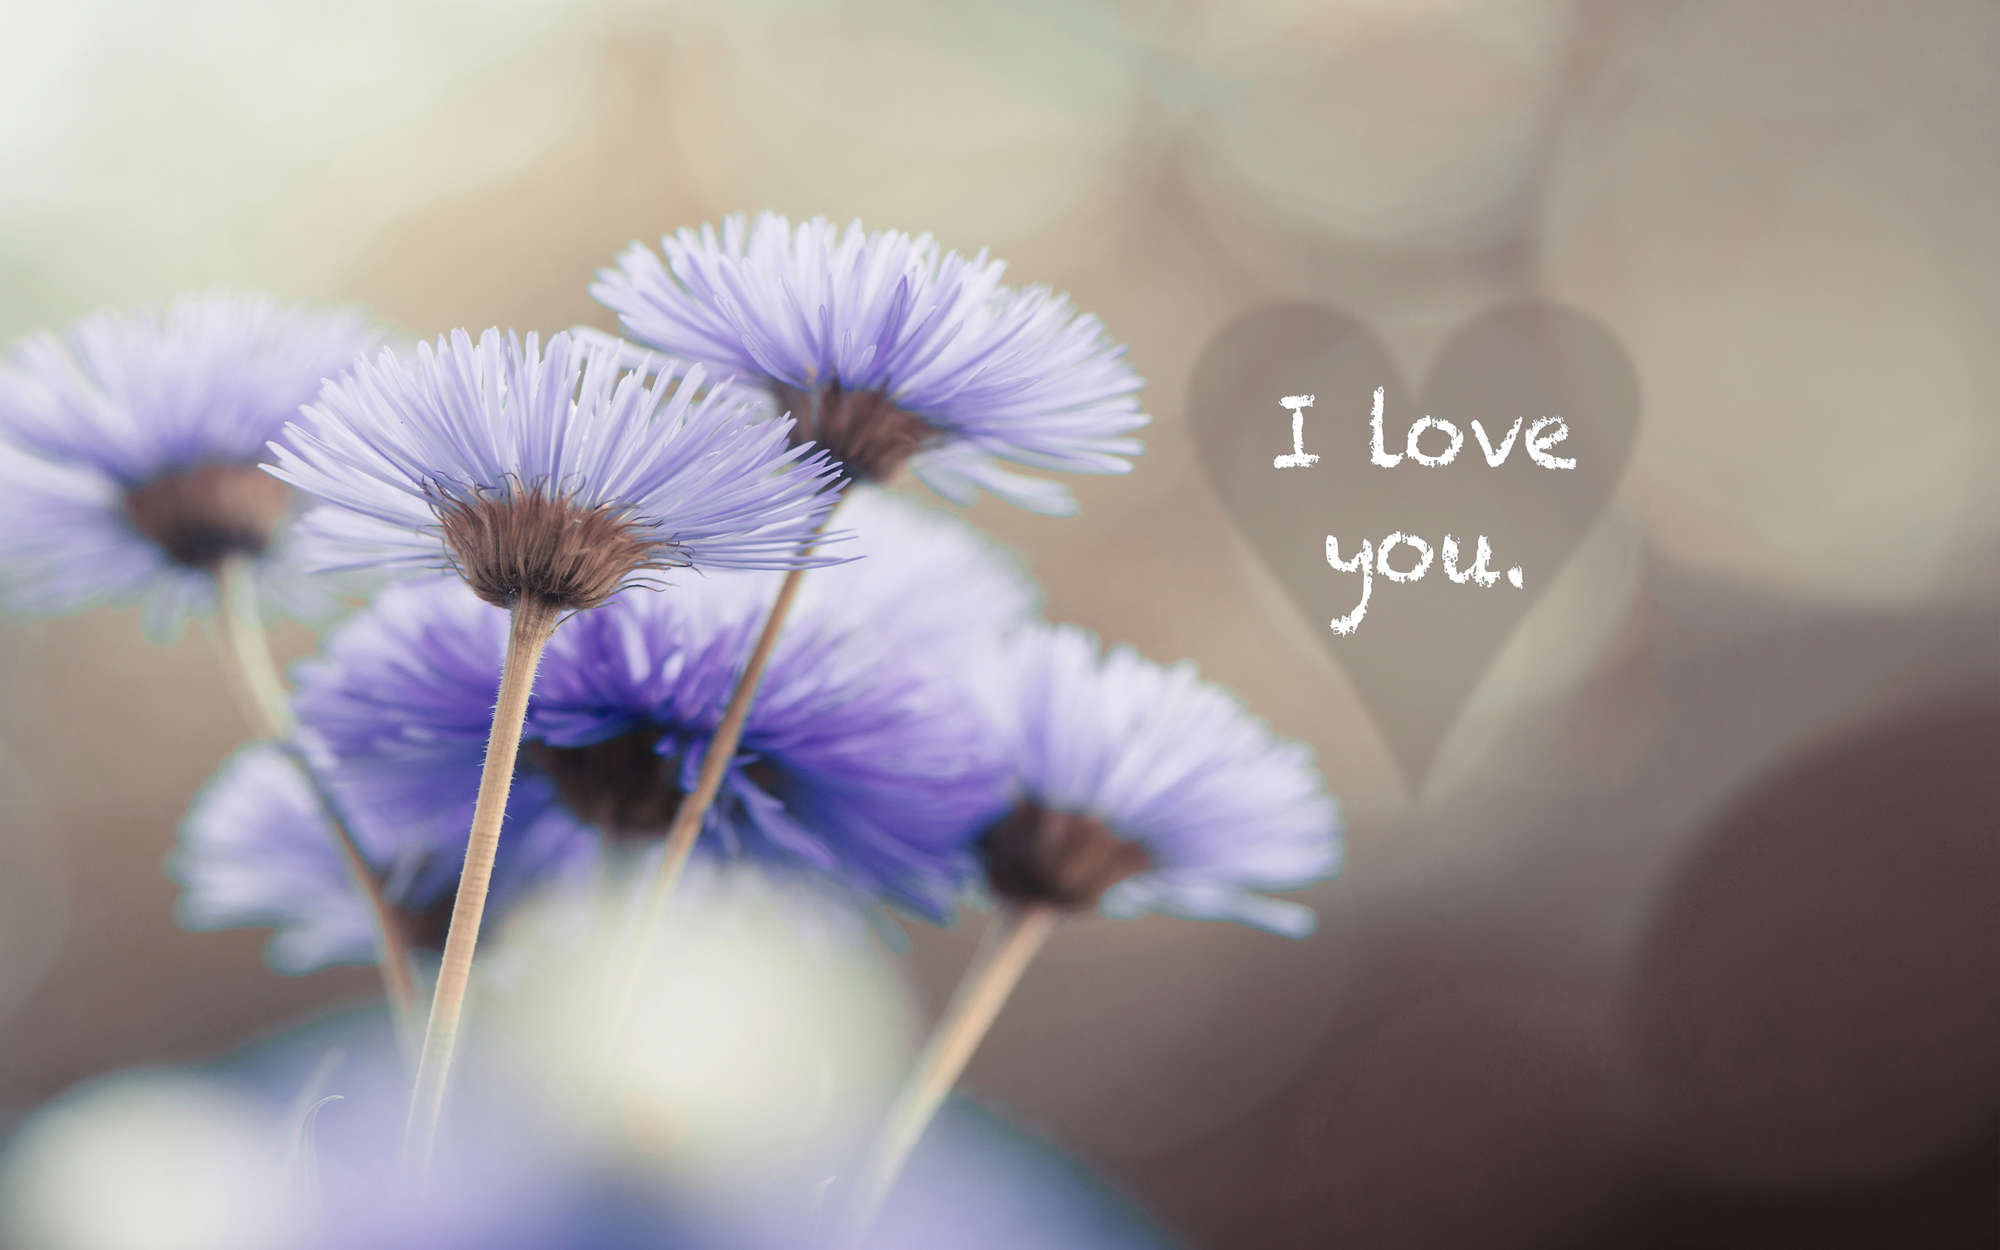             Digital behang bloemen in violet met opschrift "I love you" - structuurvlies
        